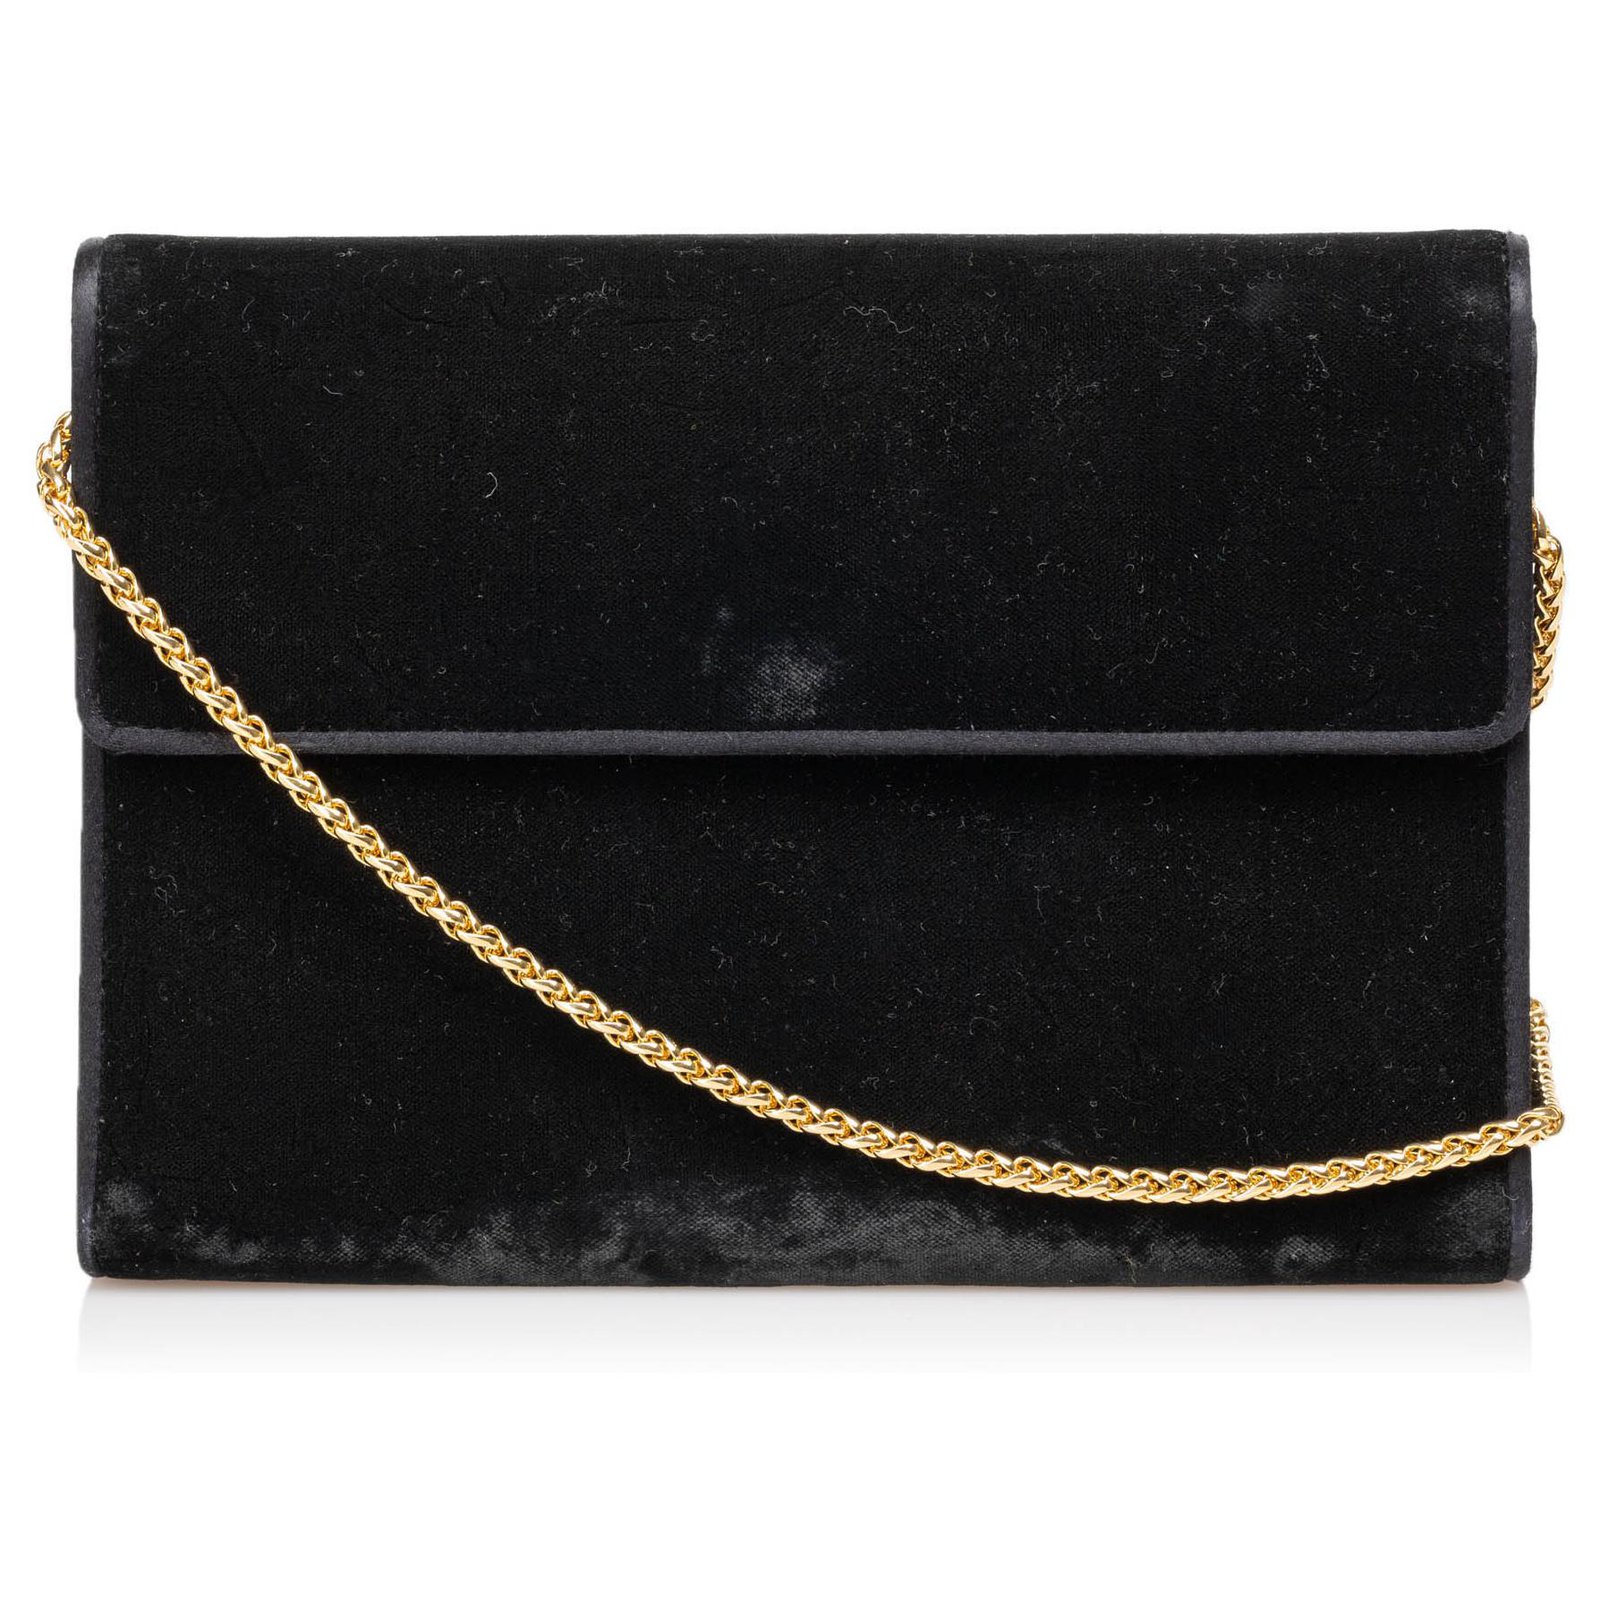 gucci black purse with chain